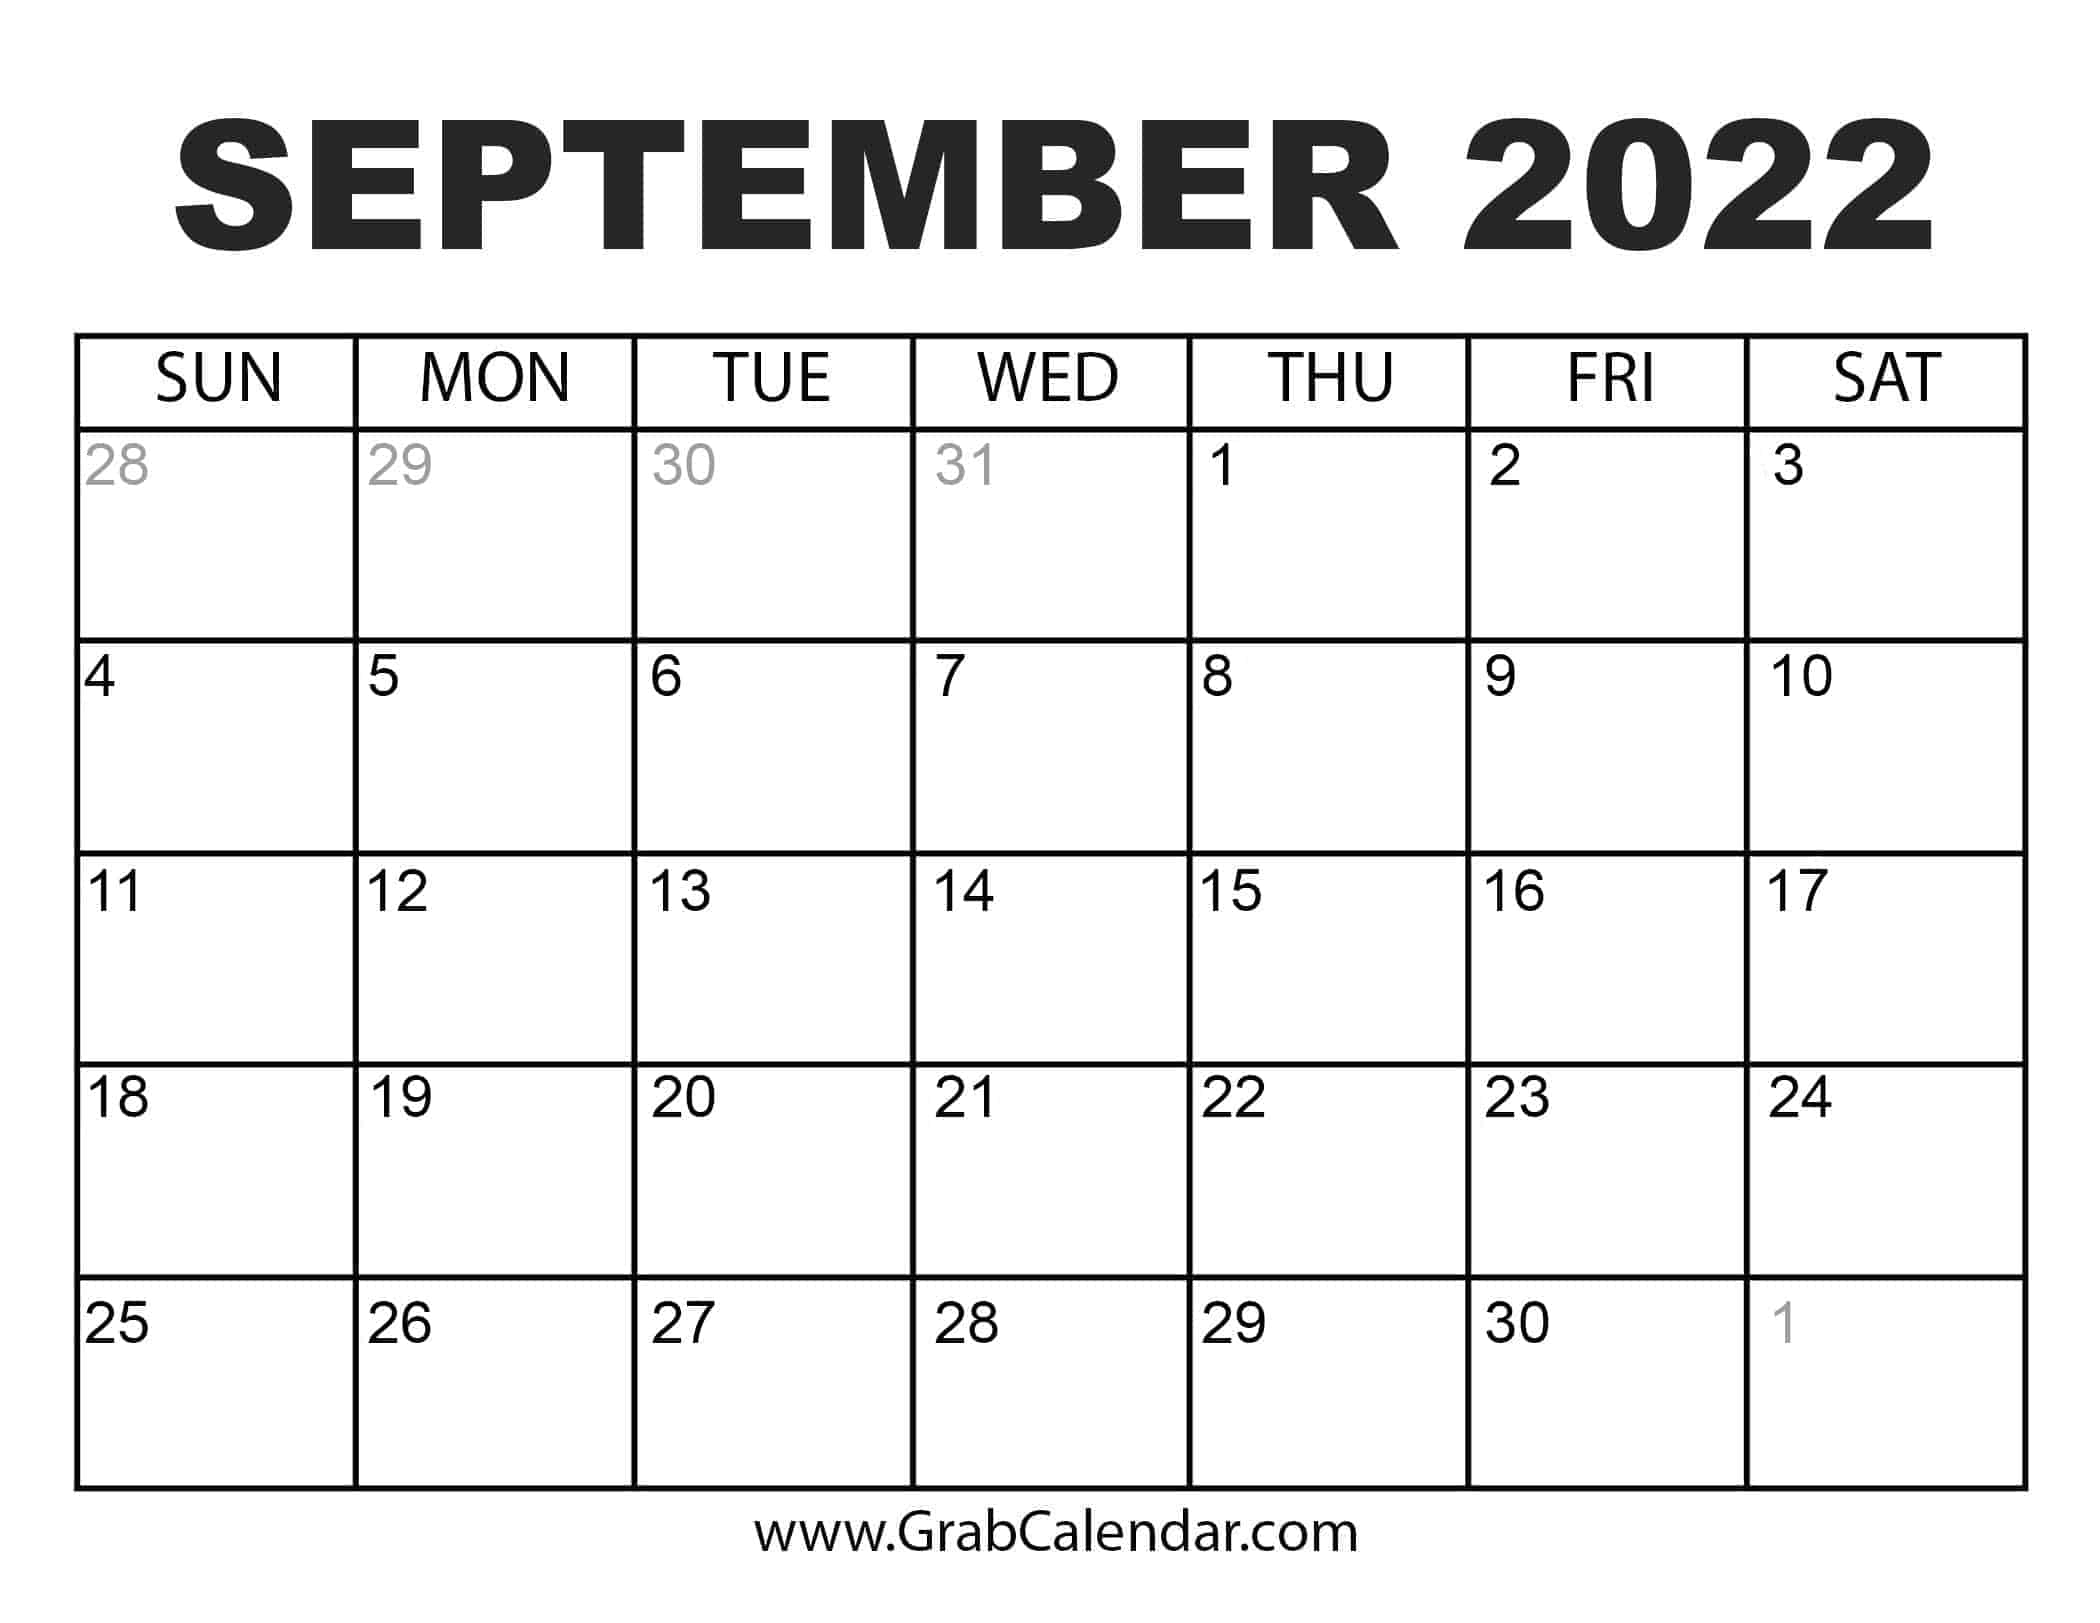 September Calendar For 2022 Printable September 2022 Calendar